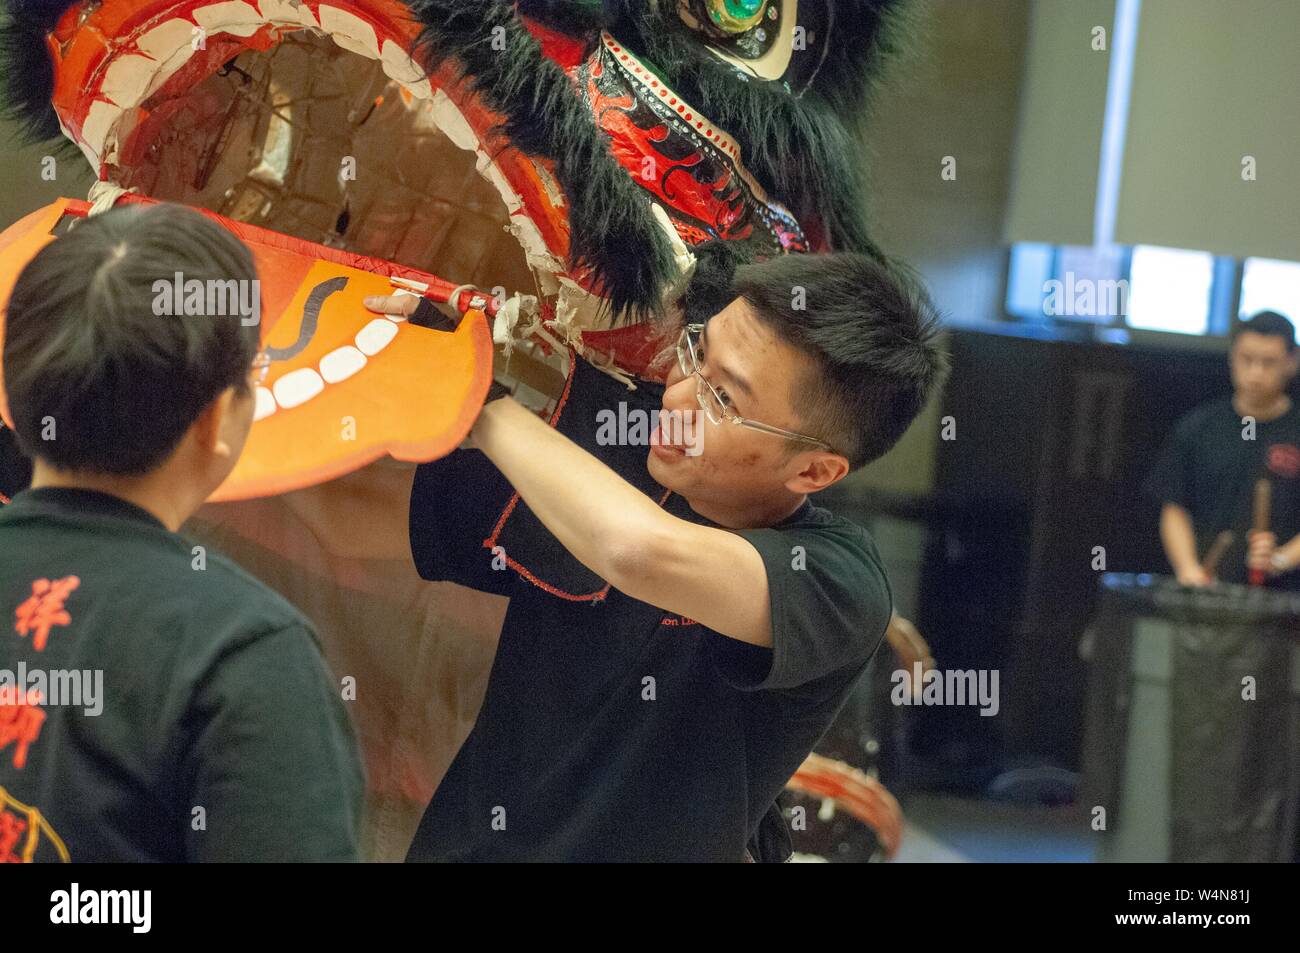 Tourné à l'épaule d'un artiste interprète ou exécutant la manipulation de la bouche d'un Lion Chinois costume, avec un batteur en arrière-plan, à l'Université Johns Hopkins University, Baltimore, Maryland, le 11 février 2006. À partir de la collection photographique de Homewood. () Banque D'Images